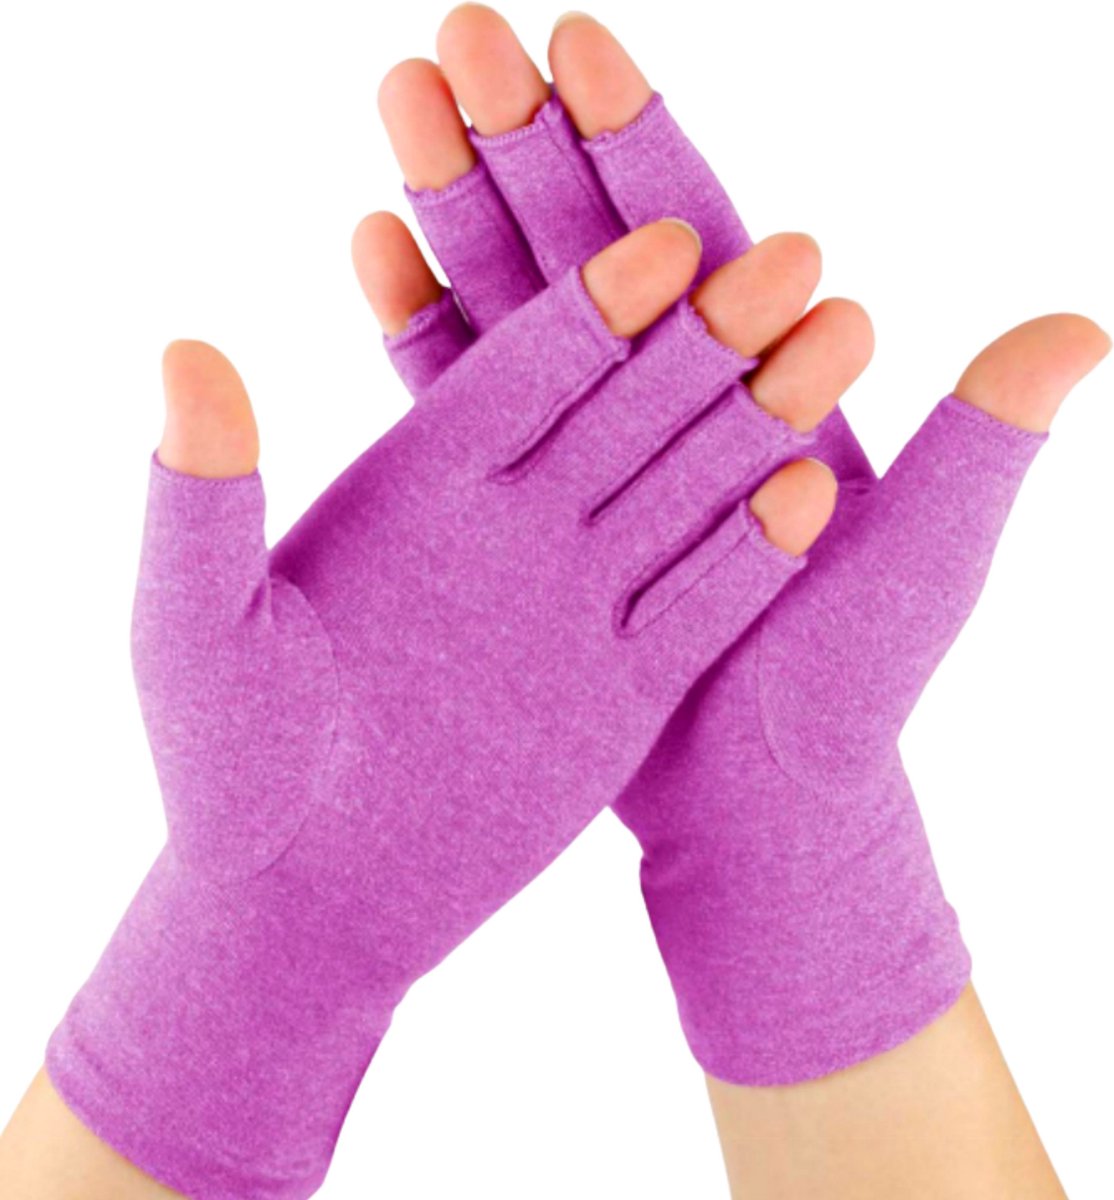 Kangka Artritis Handschoenen met Open Vingertoppen Maat S - Artrose Handschoen - Paars